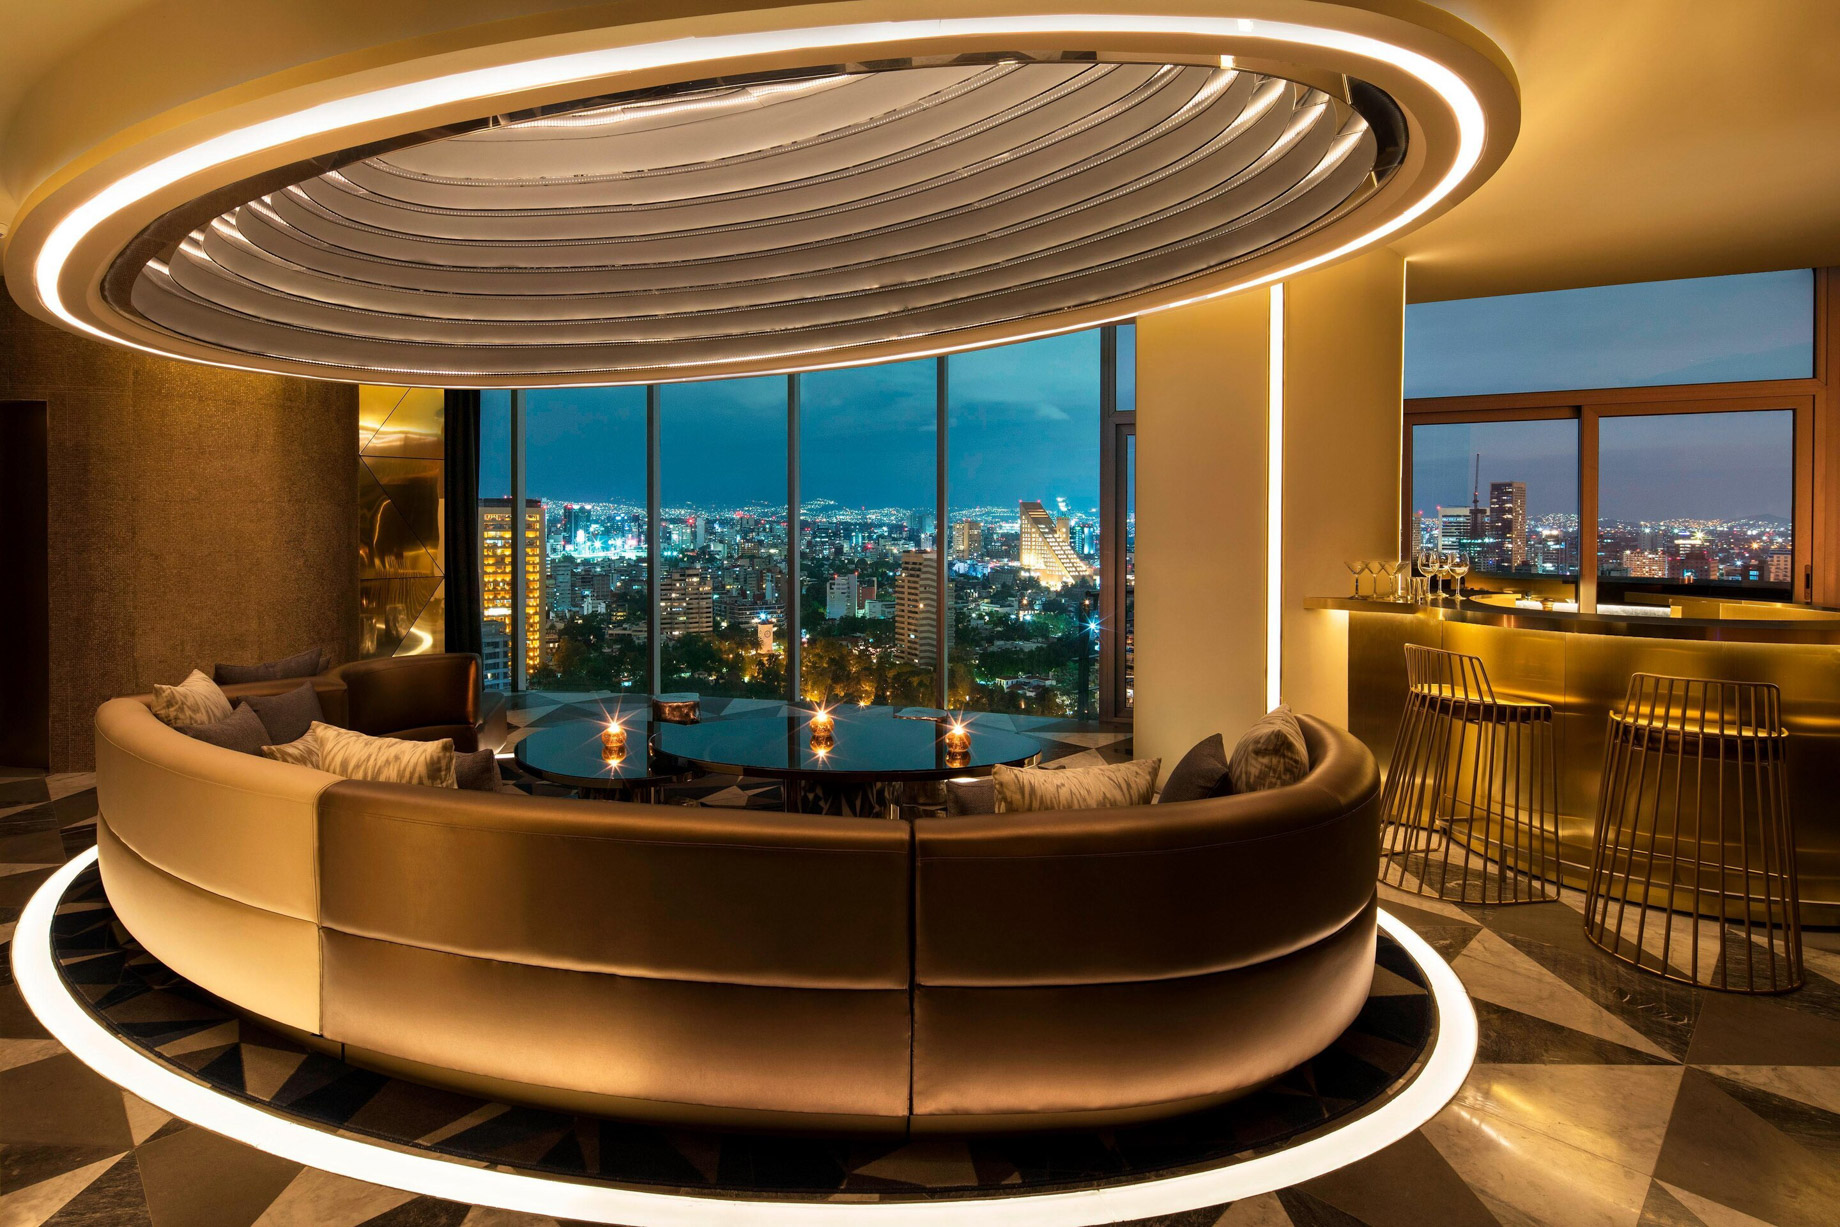 W Mexico City Hotel – Polanco, Mexico City, Mexico – E WOW Suite Living Room and Bar